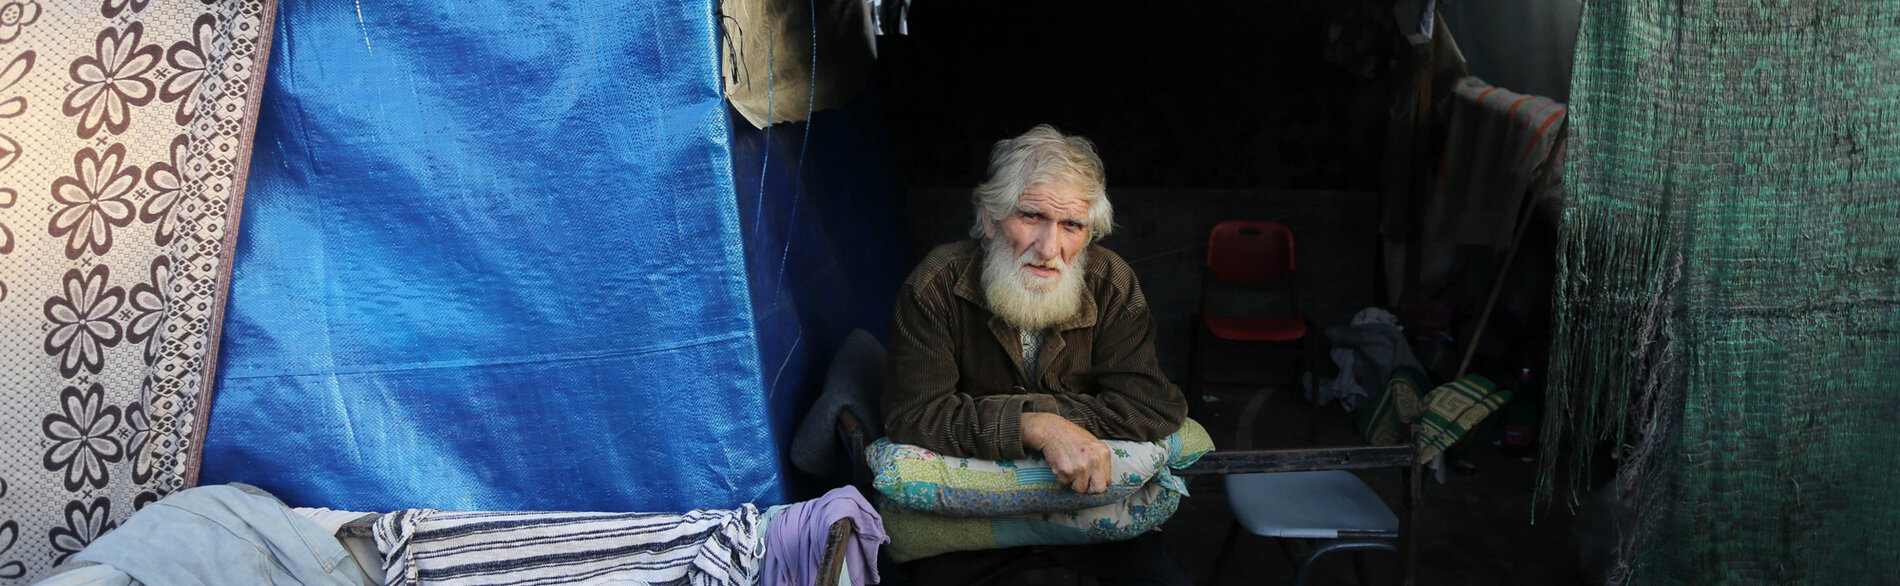 إن ما يقرب من 111,500 من كبار السن في غزة هم من بين الأشخاص الأكثر عرضة للجوع والتجفاف والأمراض والإصابات والموت، وفقًا لمنظمة هيلب إيج. فلسطيني مسن نازح في مركز إيواء مؤقت. تصوير الأونروا